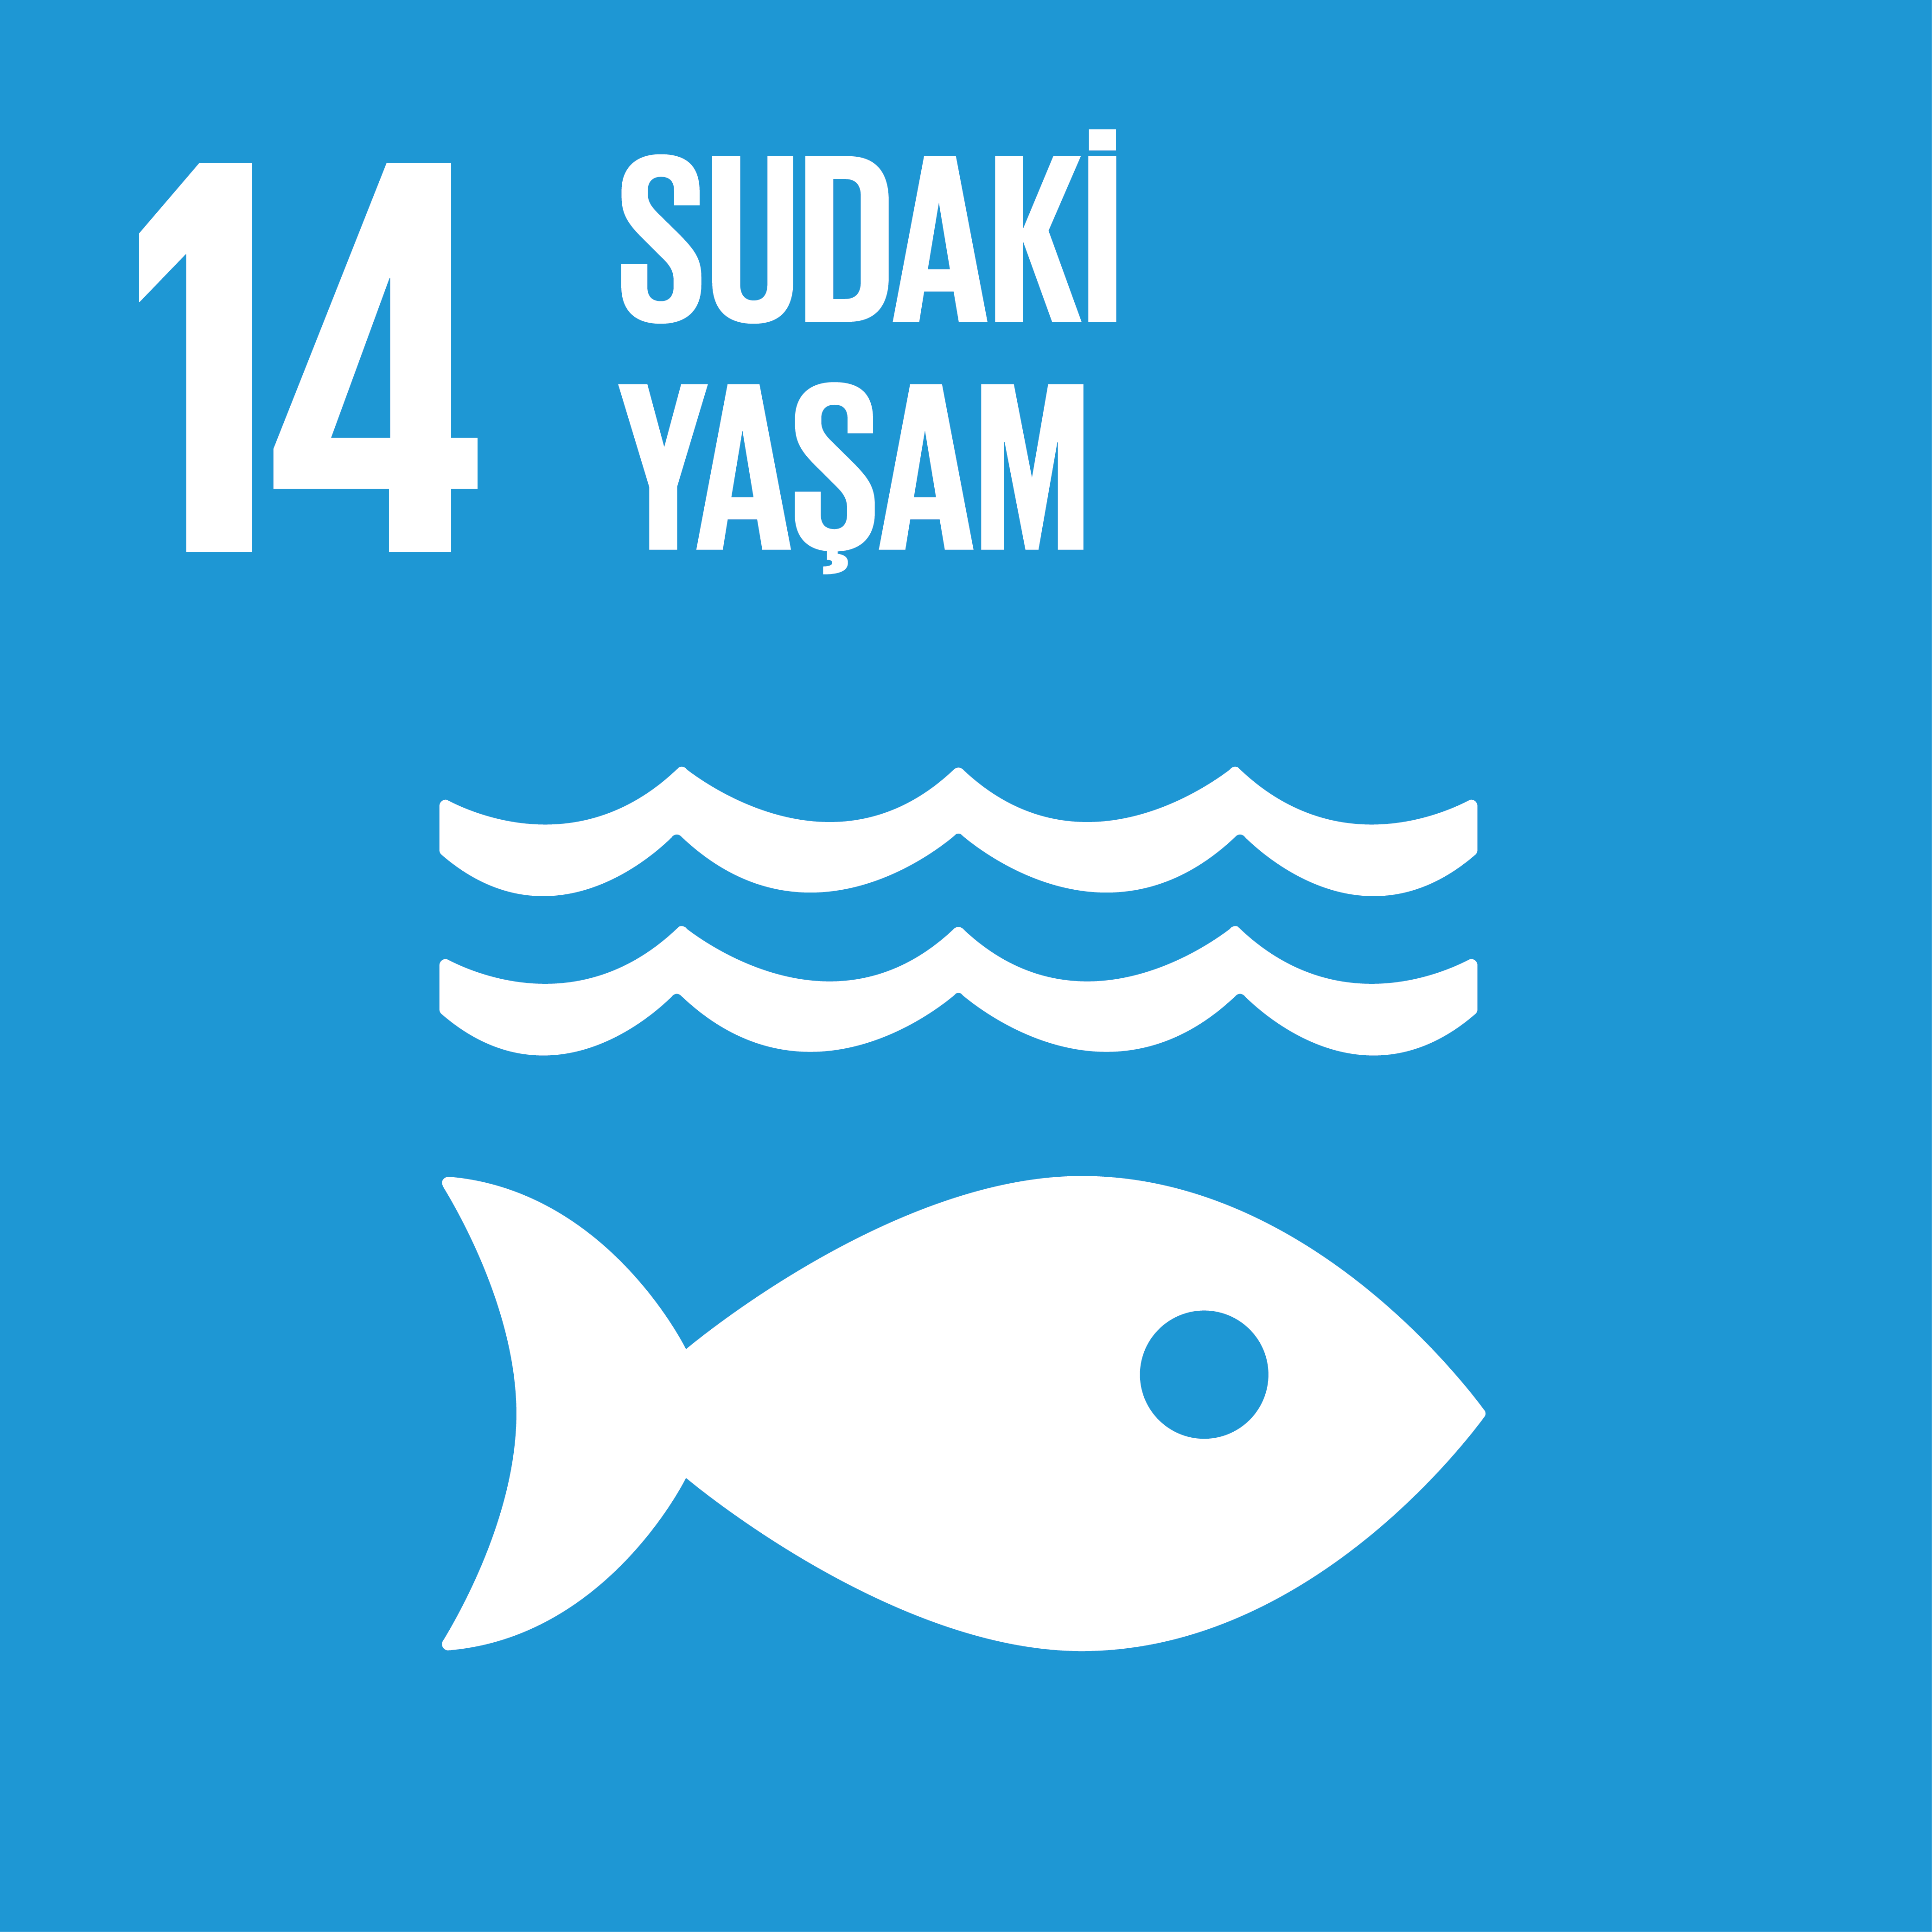 SDG 14 Sürdürülebilir Kalkınma Amacı 14 - Sudaki Yaşam